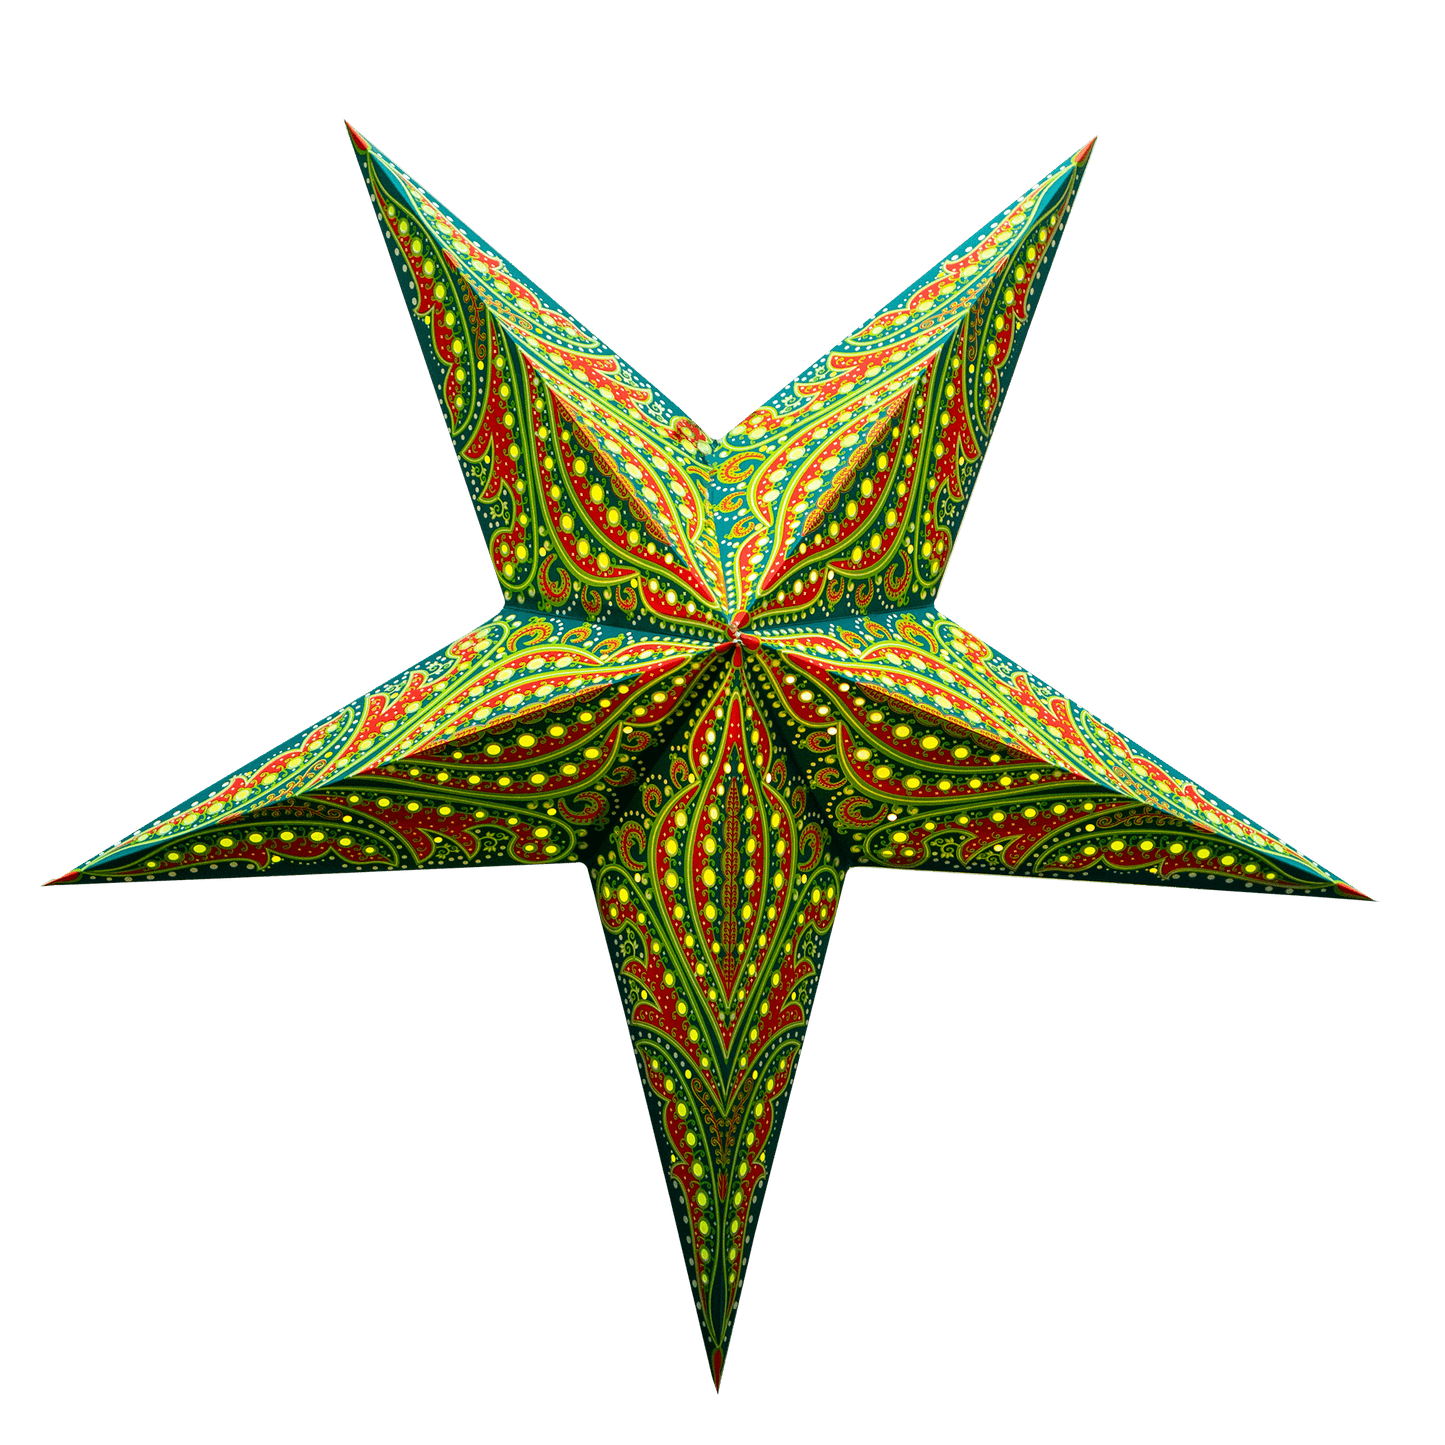 Patterned Star lights - 7 variants